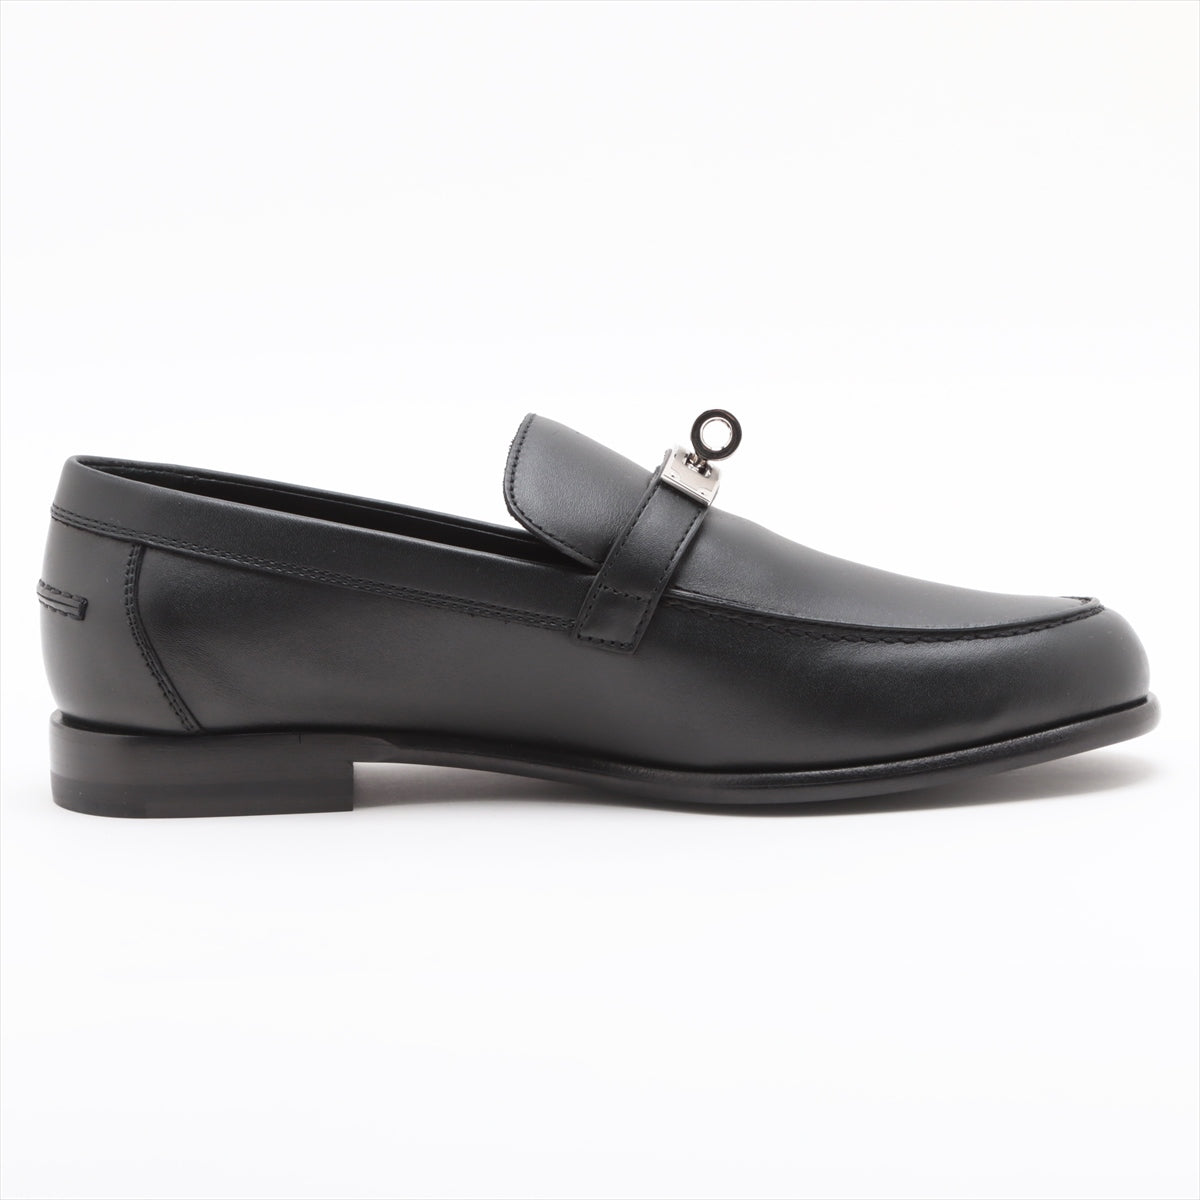 Hermès Destan Leather Loafer 36 1/2 Ladies' Black Kelly Metal Fittings